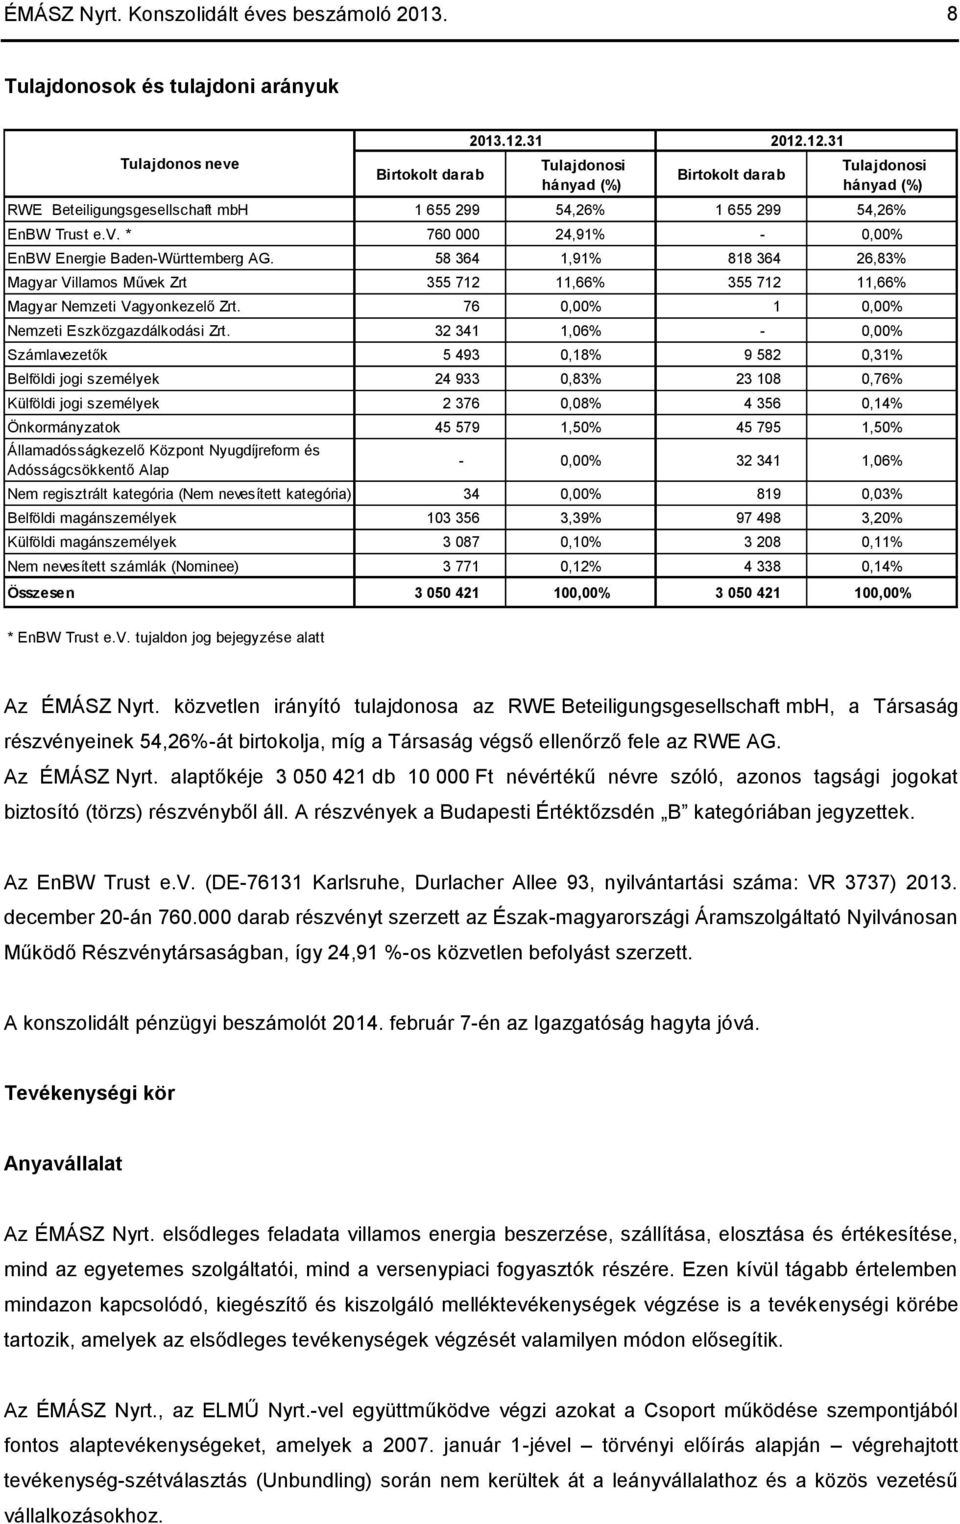 EnBW Trust e.v. * 760 000 24,91% - 0,00% EnBW Energie Baden-Württemberg AG. 58 364 1,91% 818 364 26,83% Magyar Villamos Művek Zrt 355 712 11,66% 355 712 11,66% Magyar Nemzeti Vagyonkezelő Zrt.